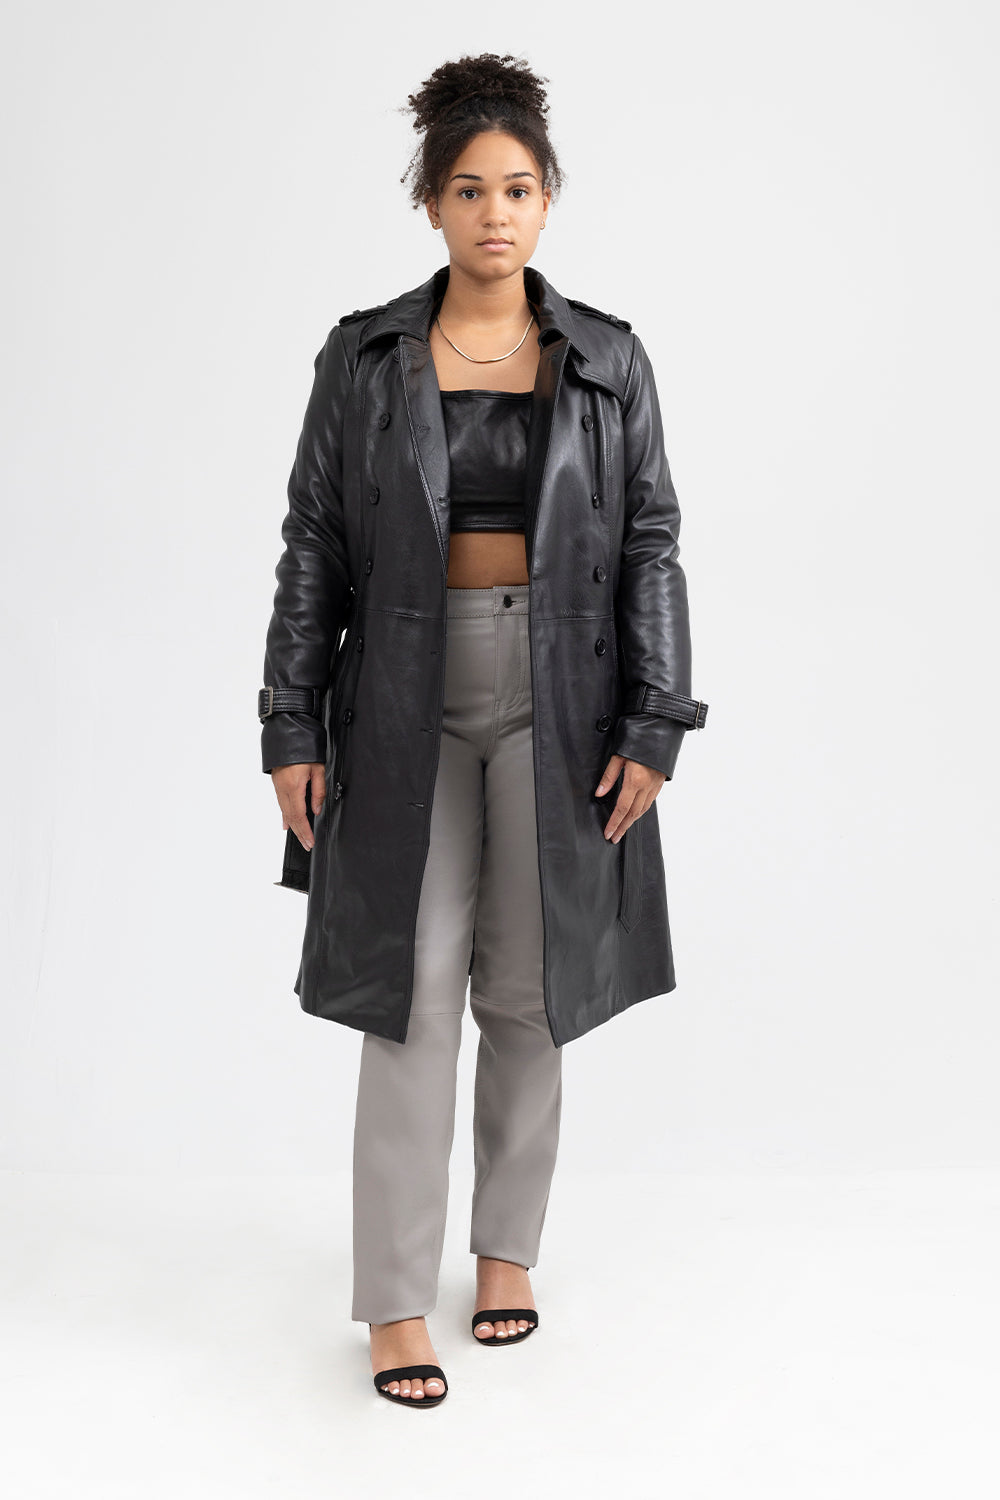 Olivia Womens Fashion Leather Jacket Women's Leather Jacket Whet Blu NYC   